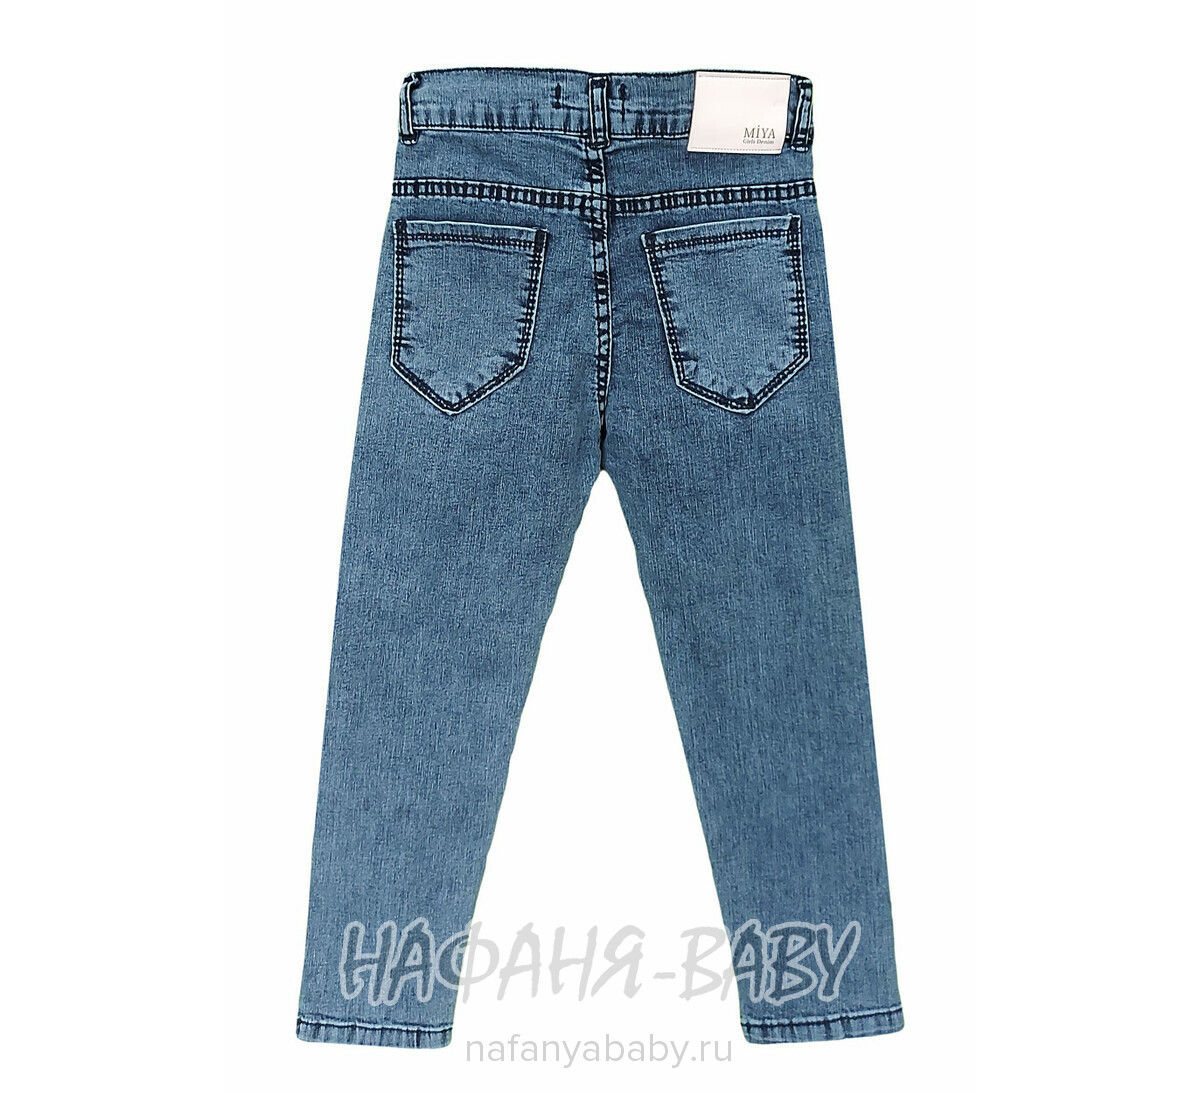 Детские джинсы MIYA арт: 8141-1 для девочки  6-10 лет, цвет синий, оптом Турция